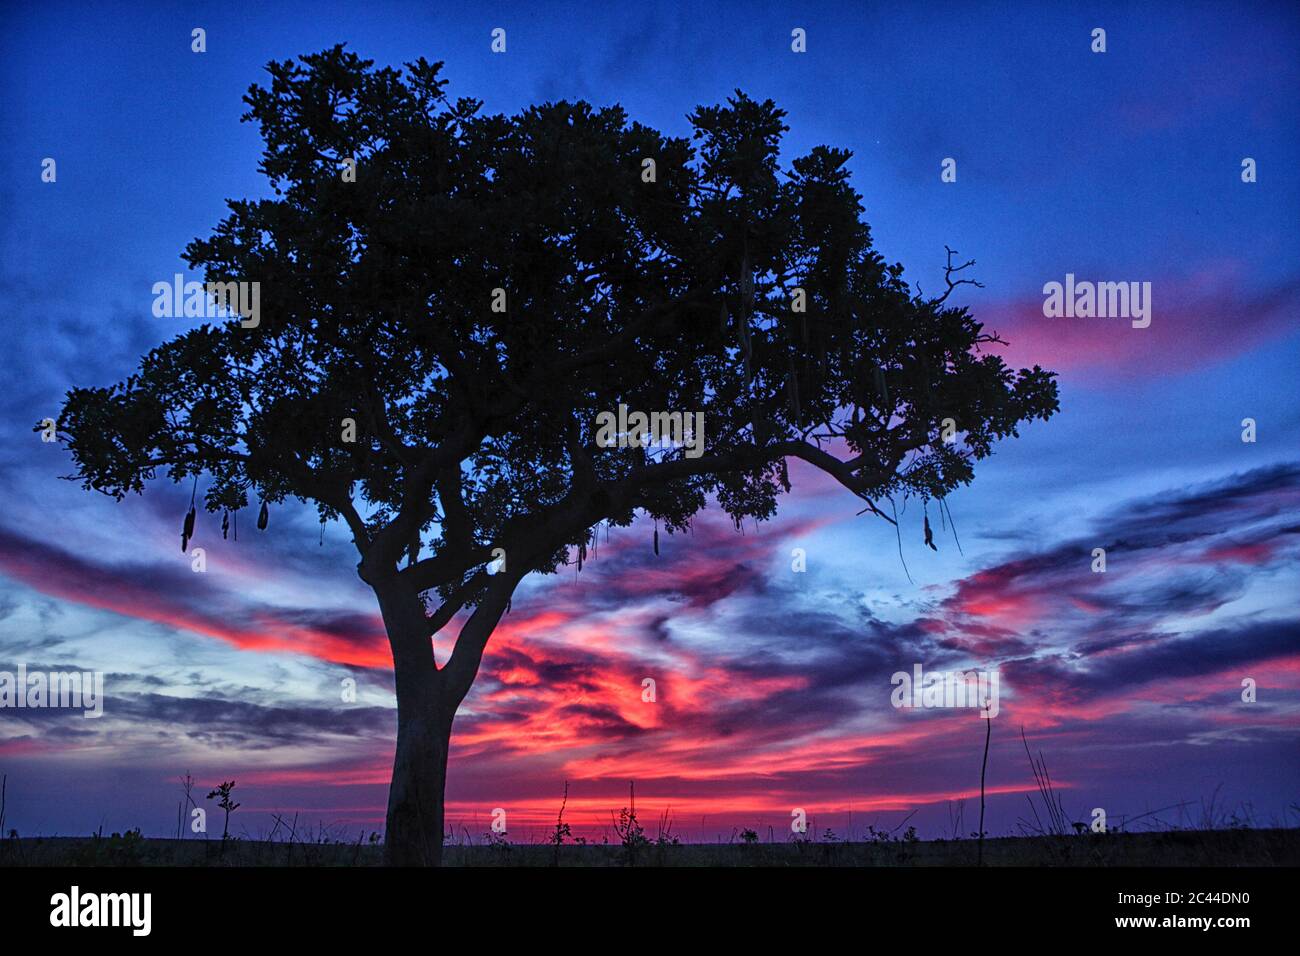 République démocratique du Congo, silhouette d'arbre contre le ciel pourpre au crépuscule Banque D'Images